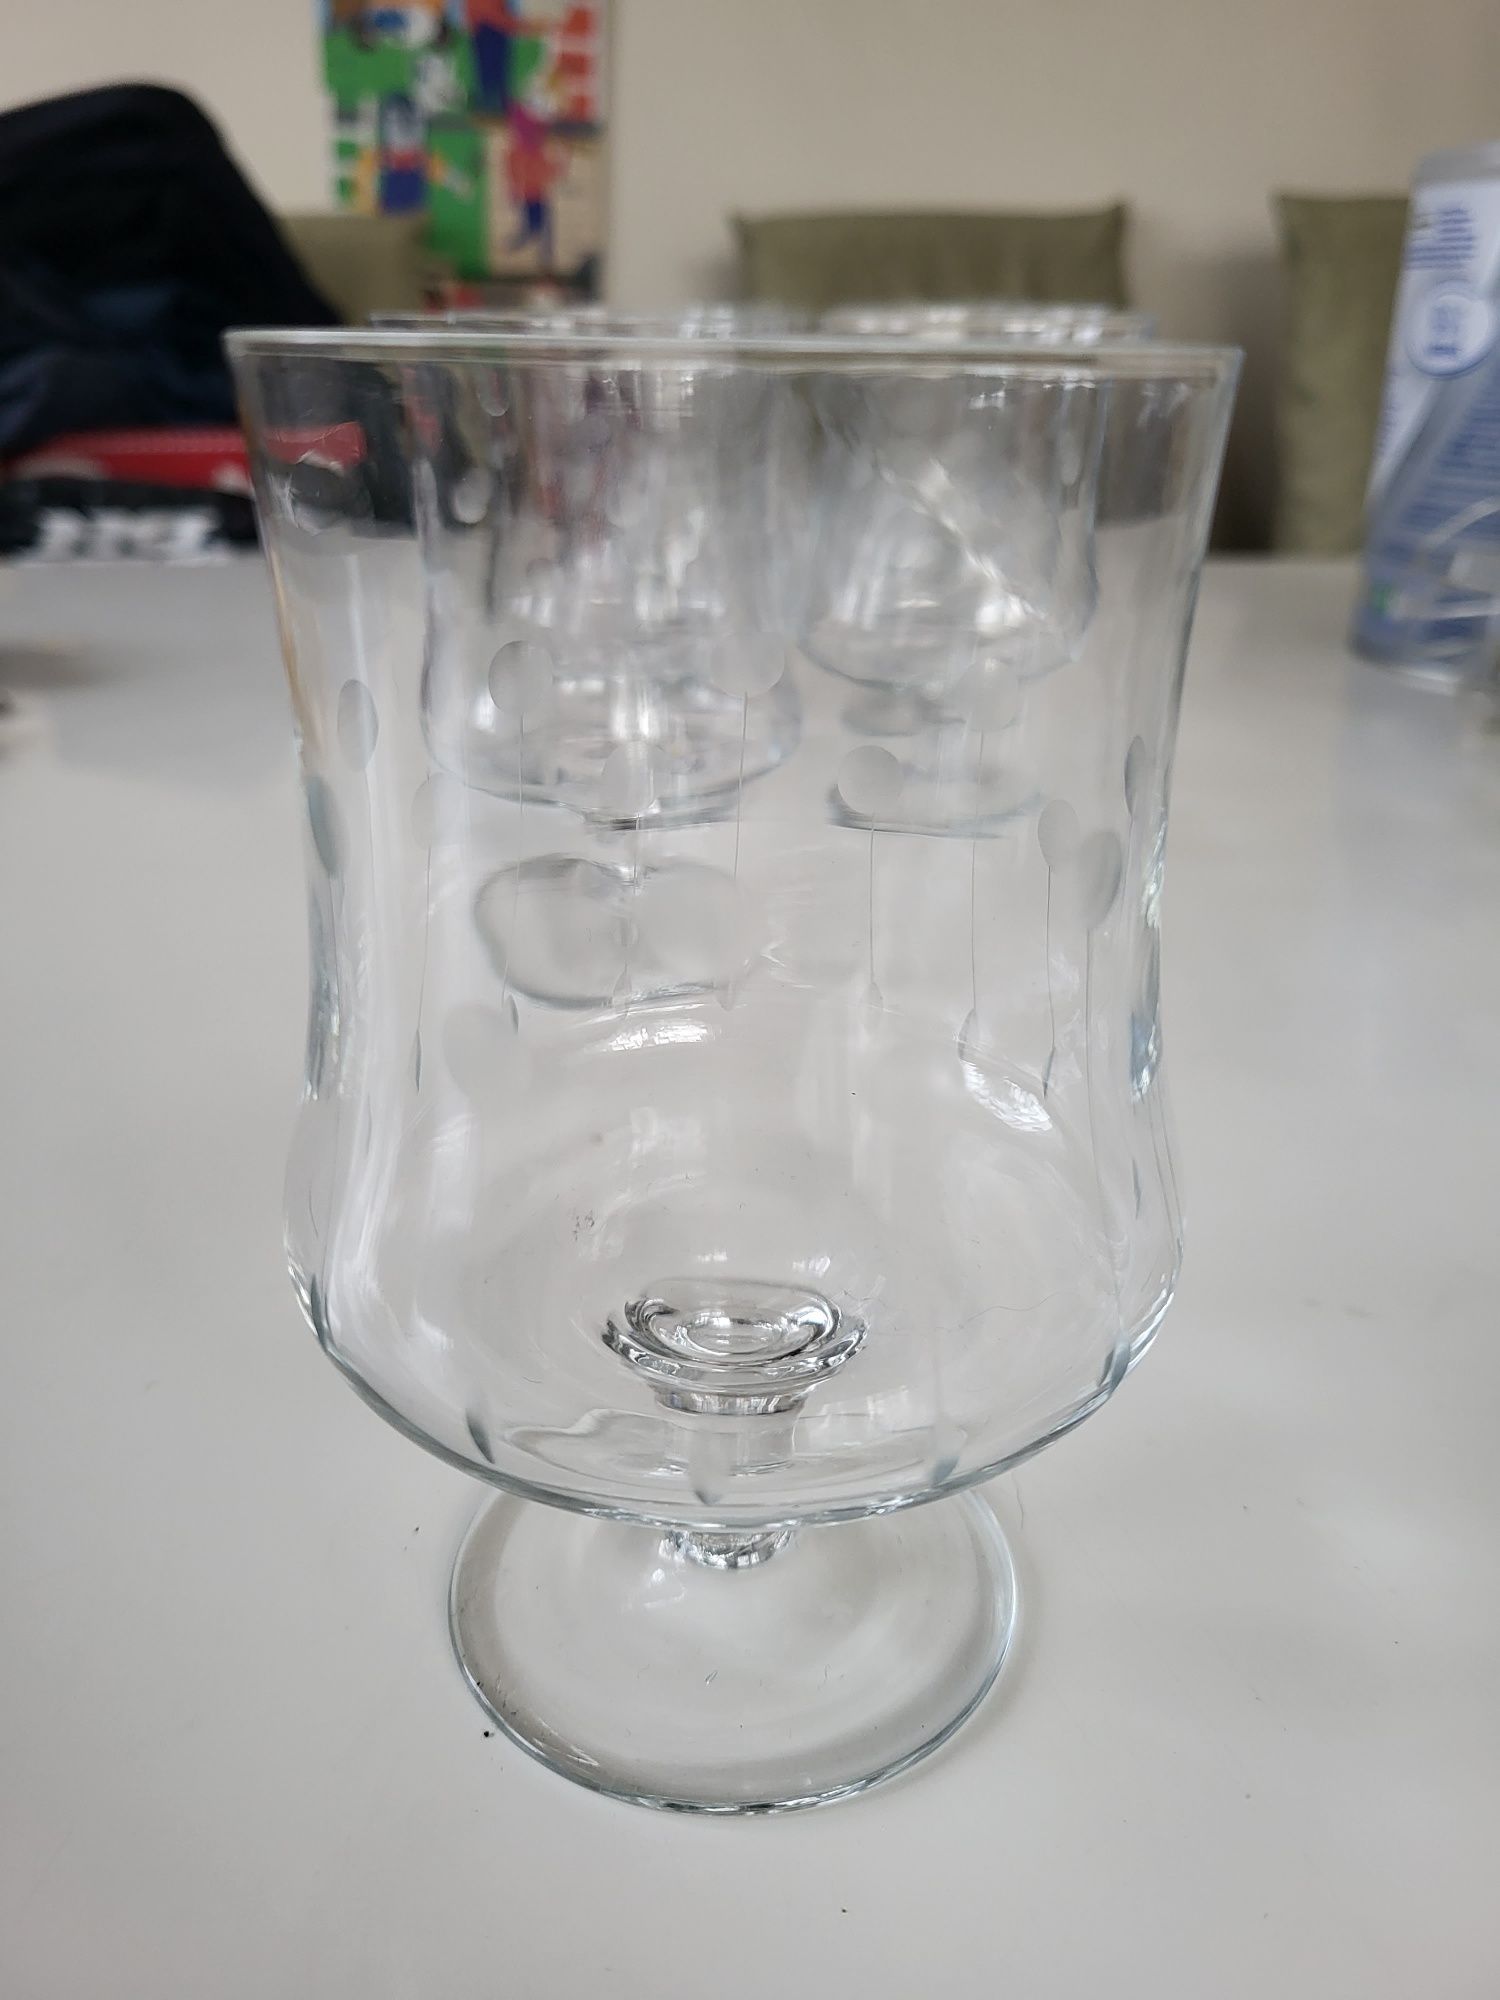 Stare szklane kieliszki ze zdobieniem.